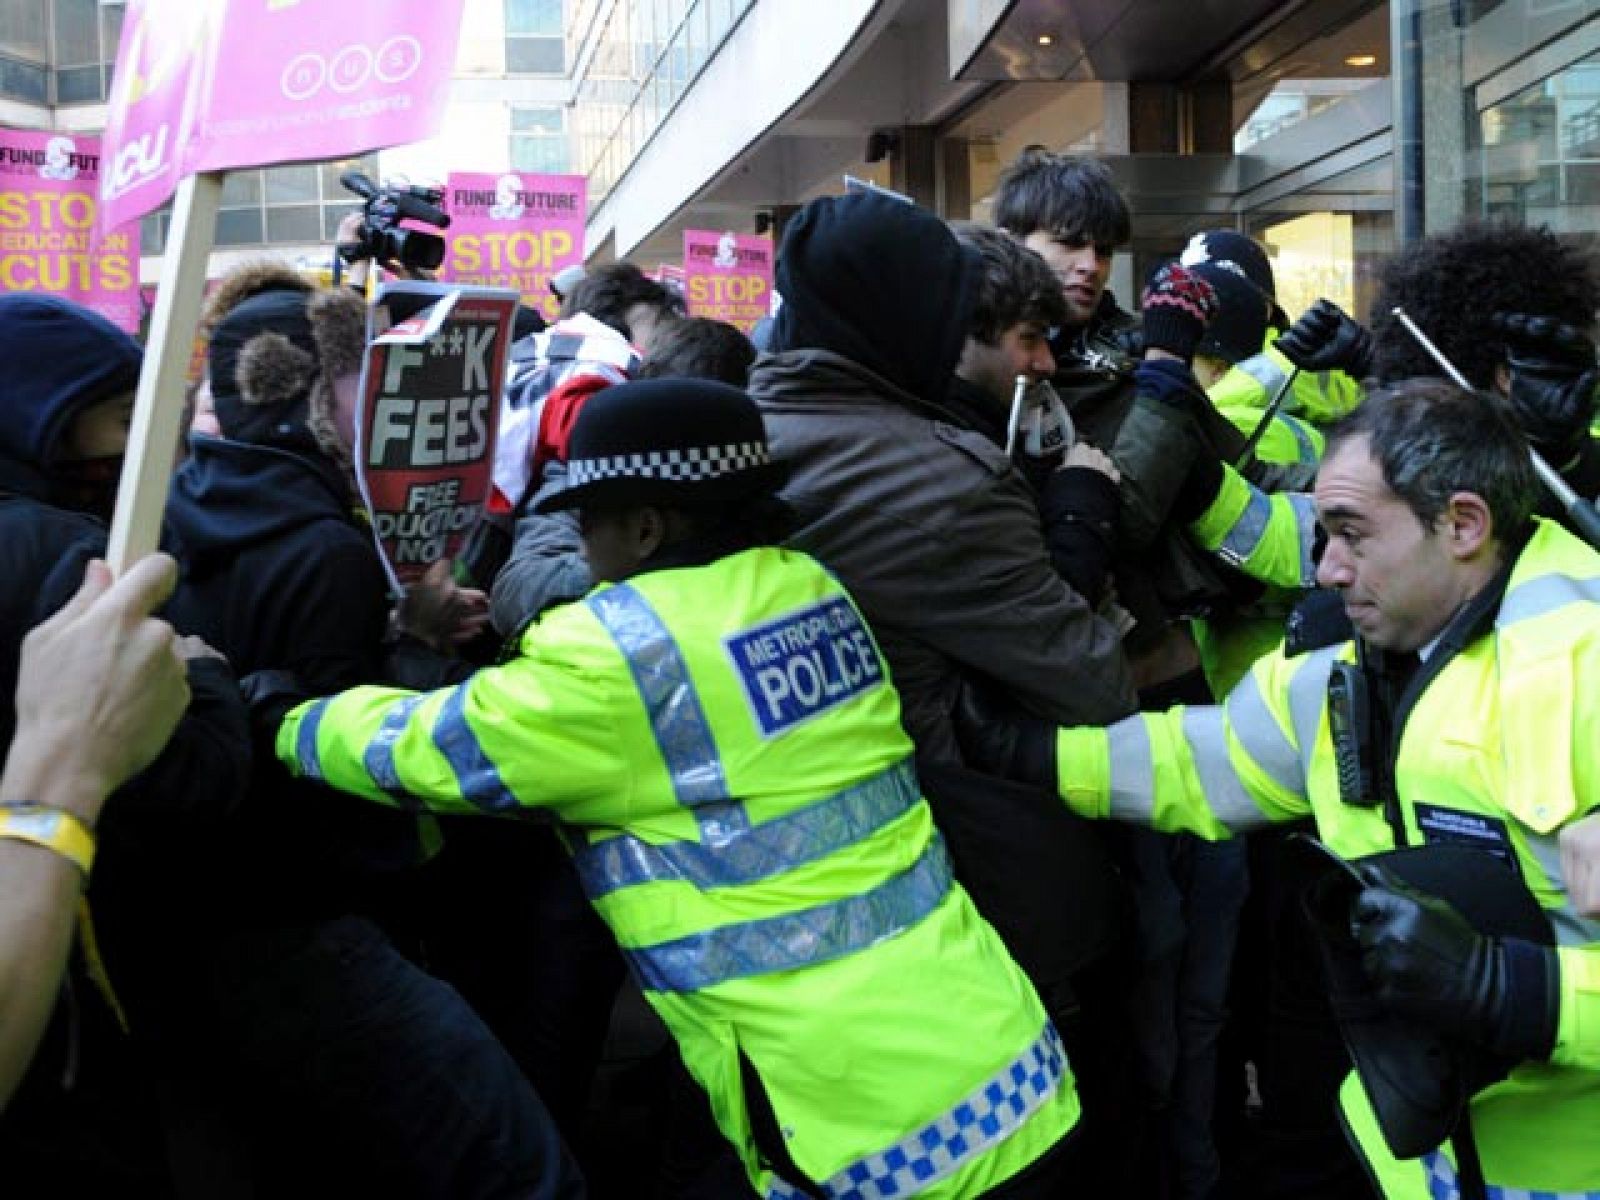 Al final de la manifestación una minoría ha asaltado el edificio donde tiene la sede el partido conservador del primer ministro David Cameron.
